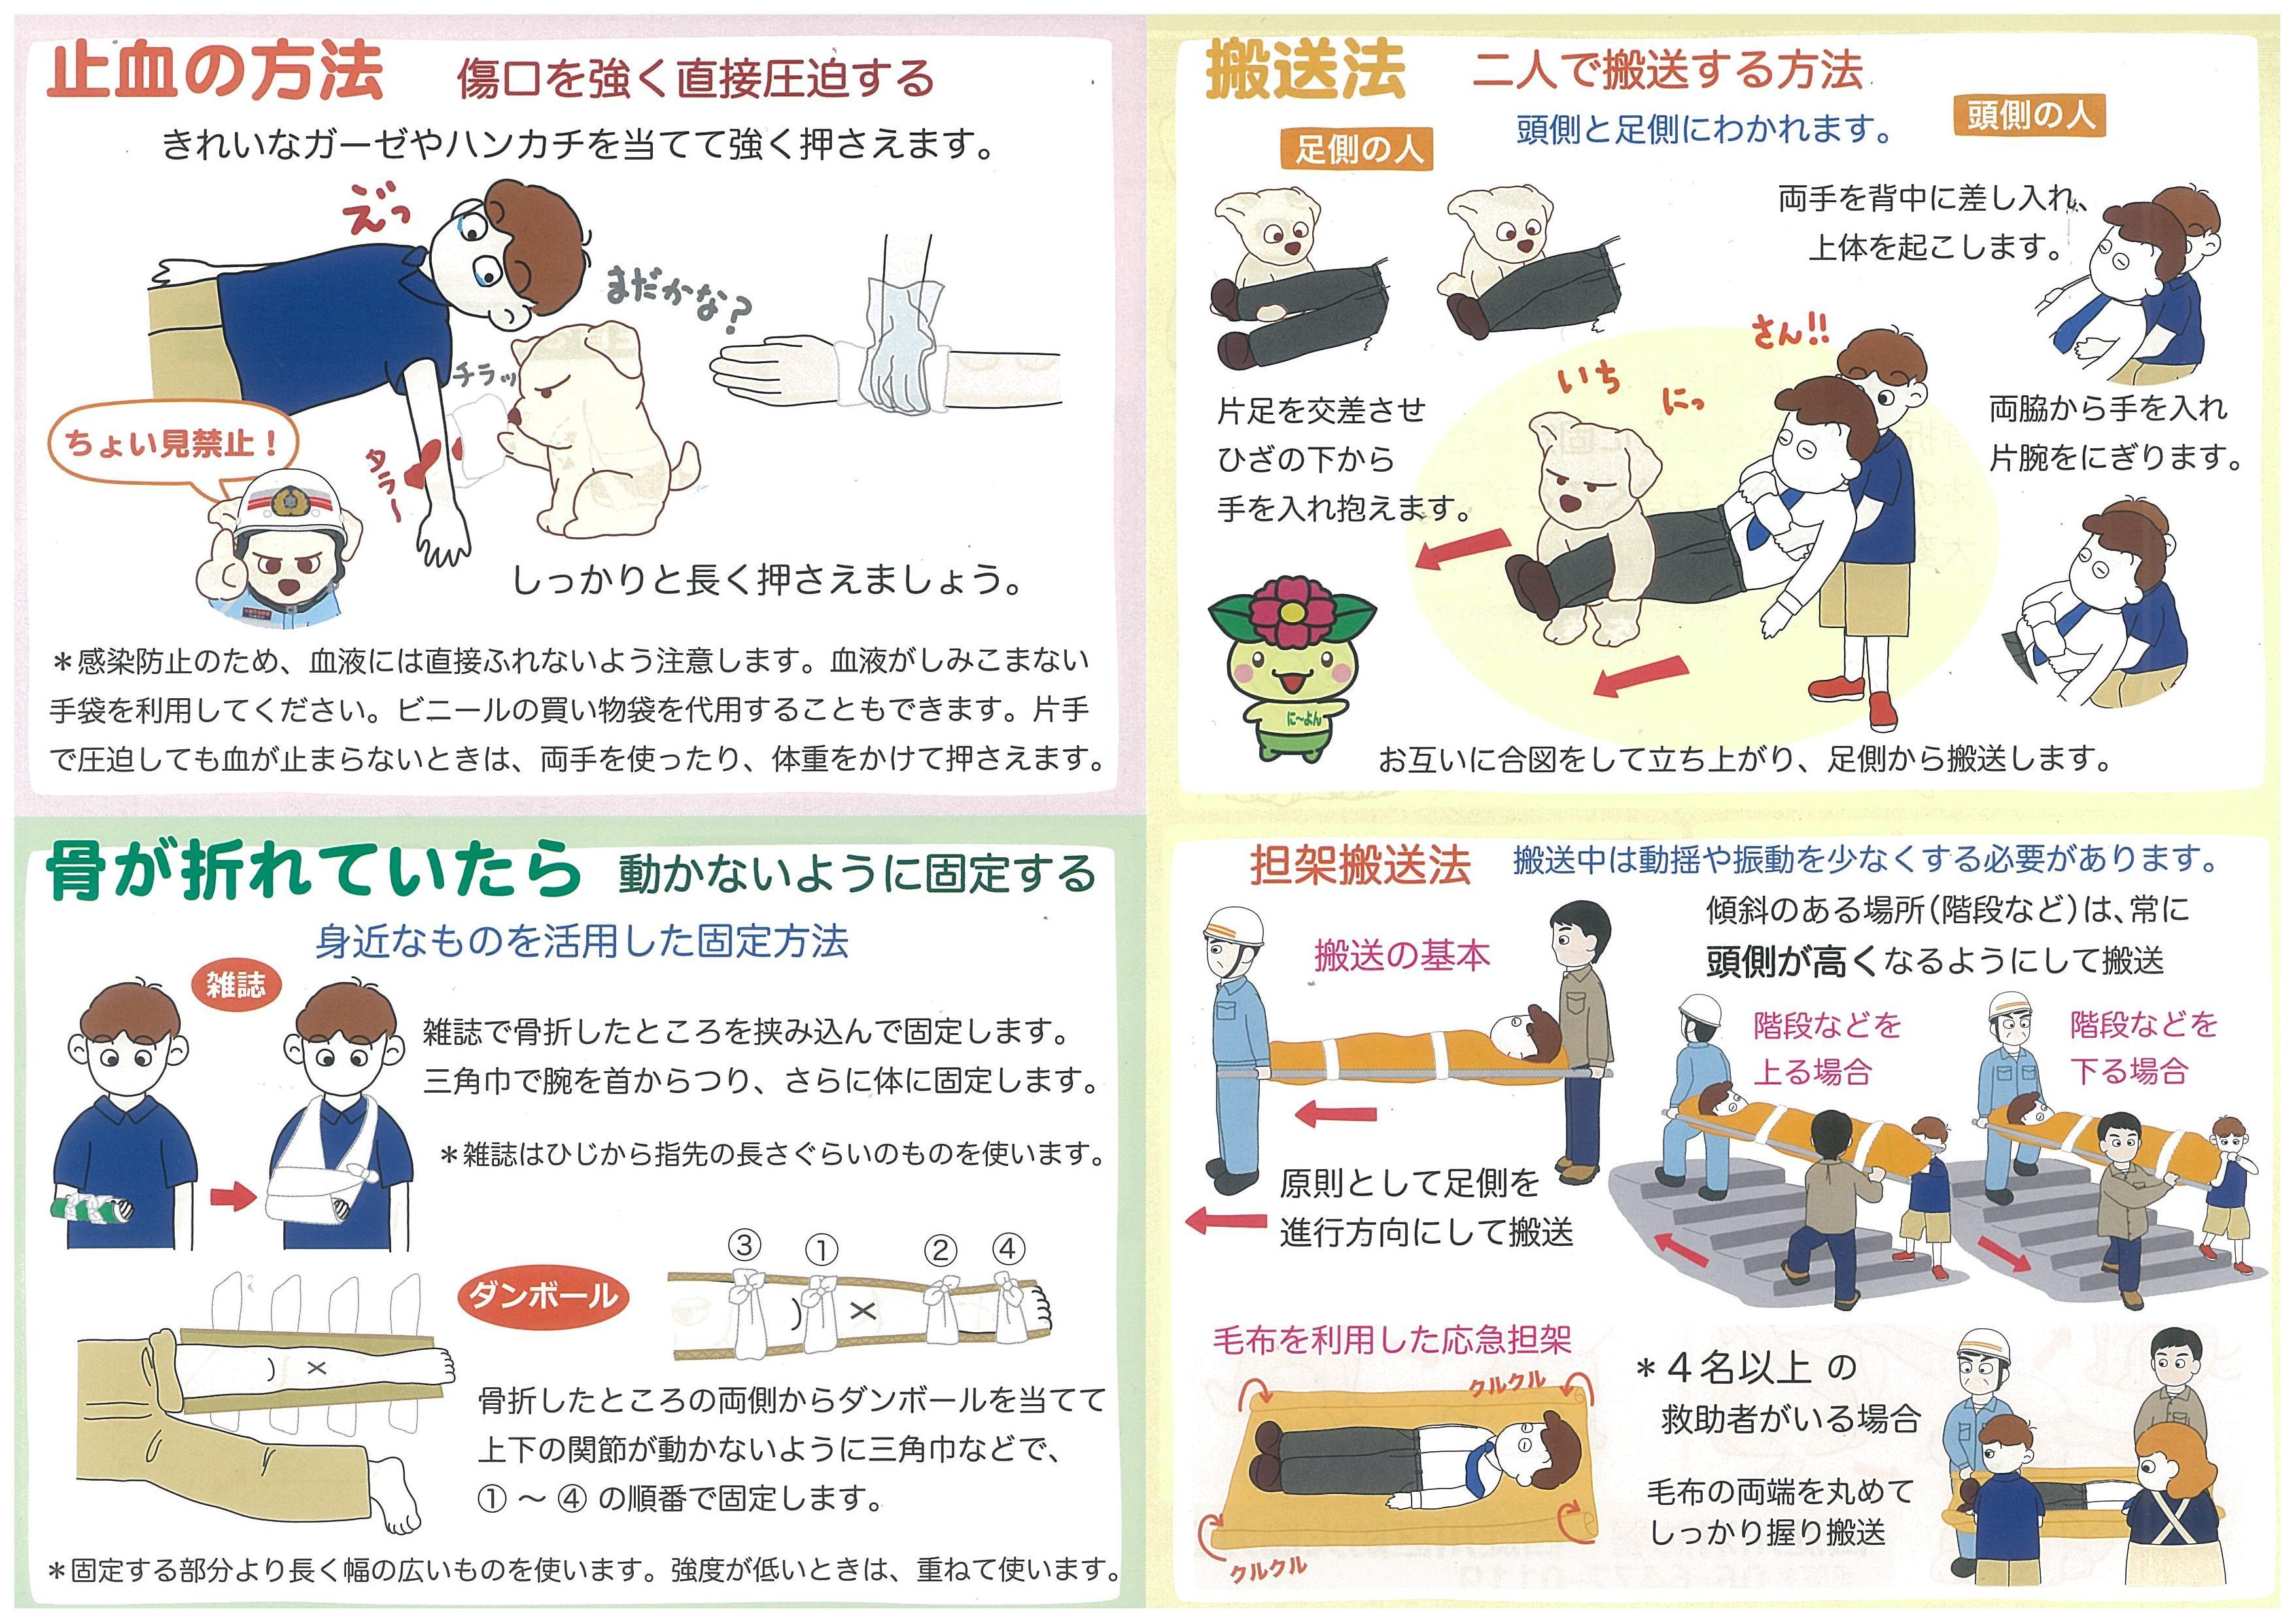 大阪市西淀川消防署 ボジョレー君が三角巾の使い方を教えてくれます 防火 防災 予防救急 応急手当